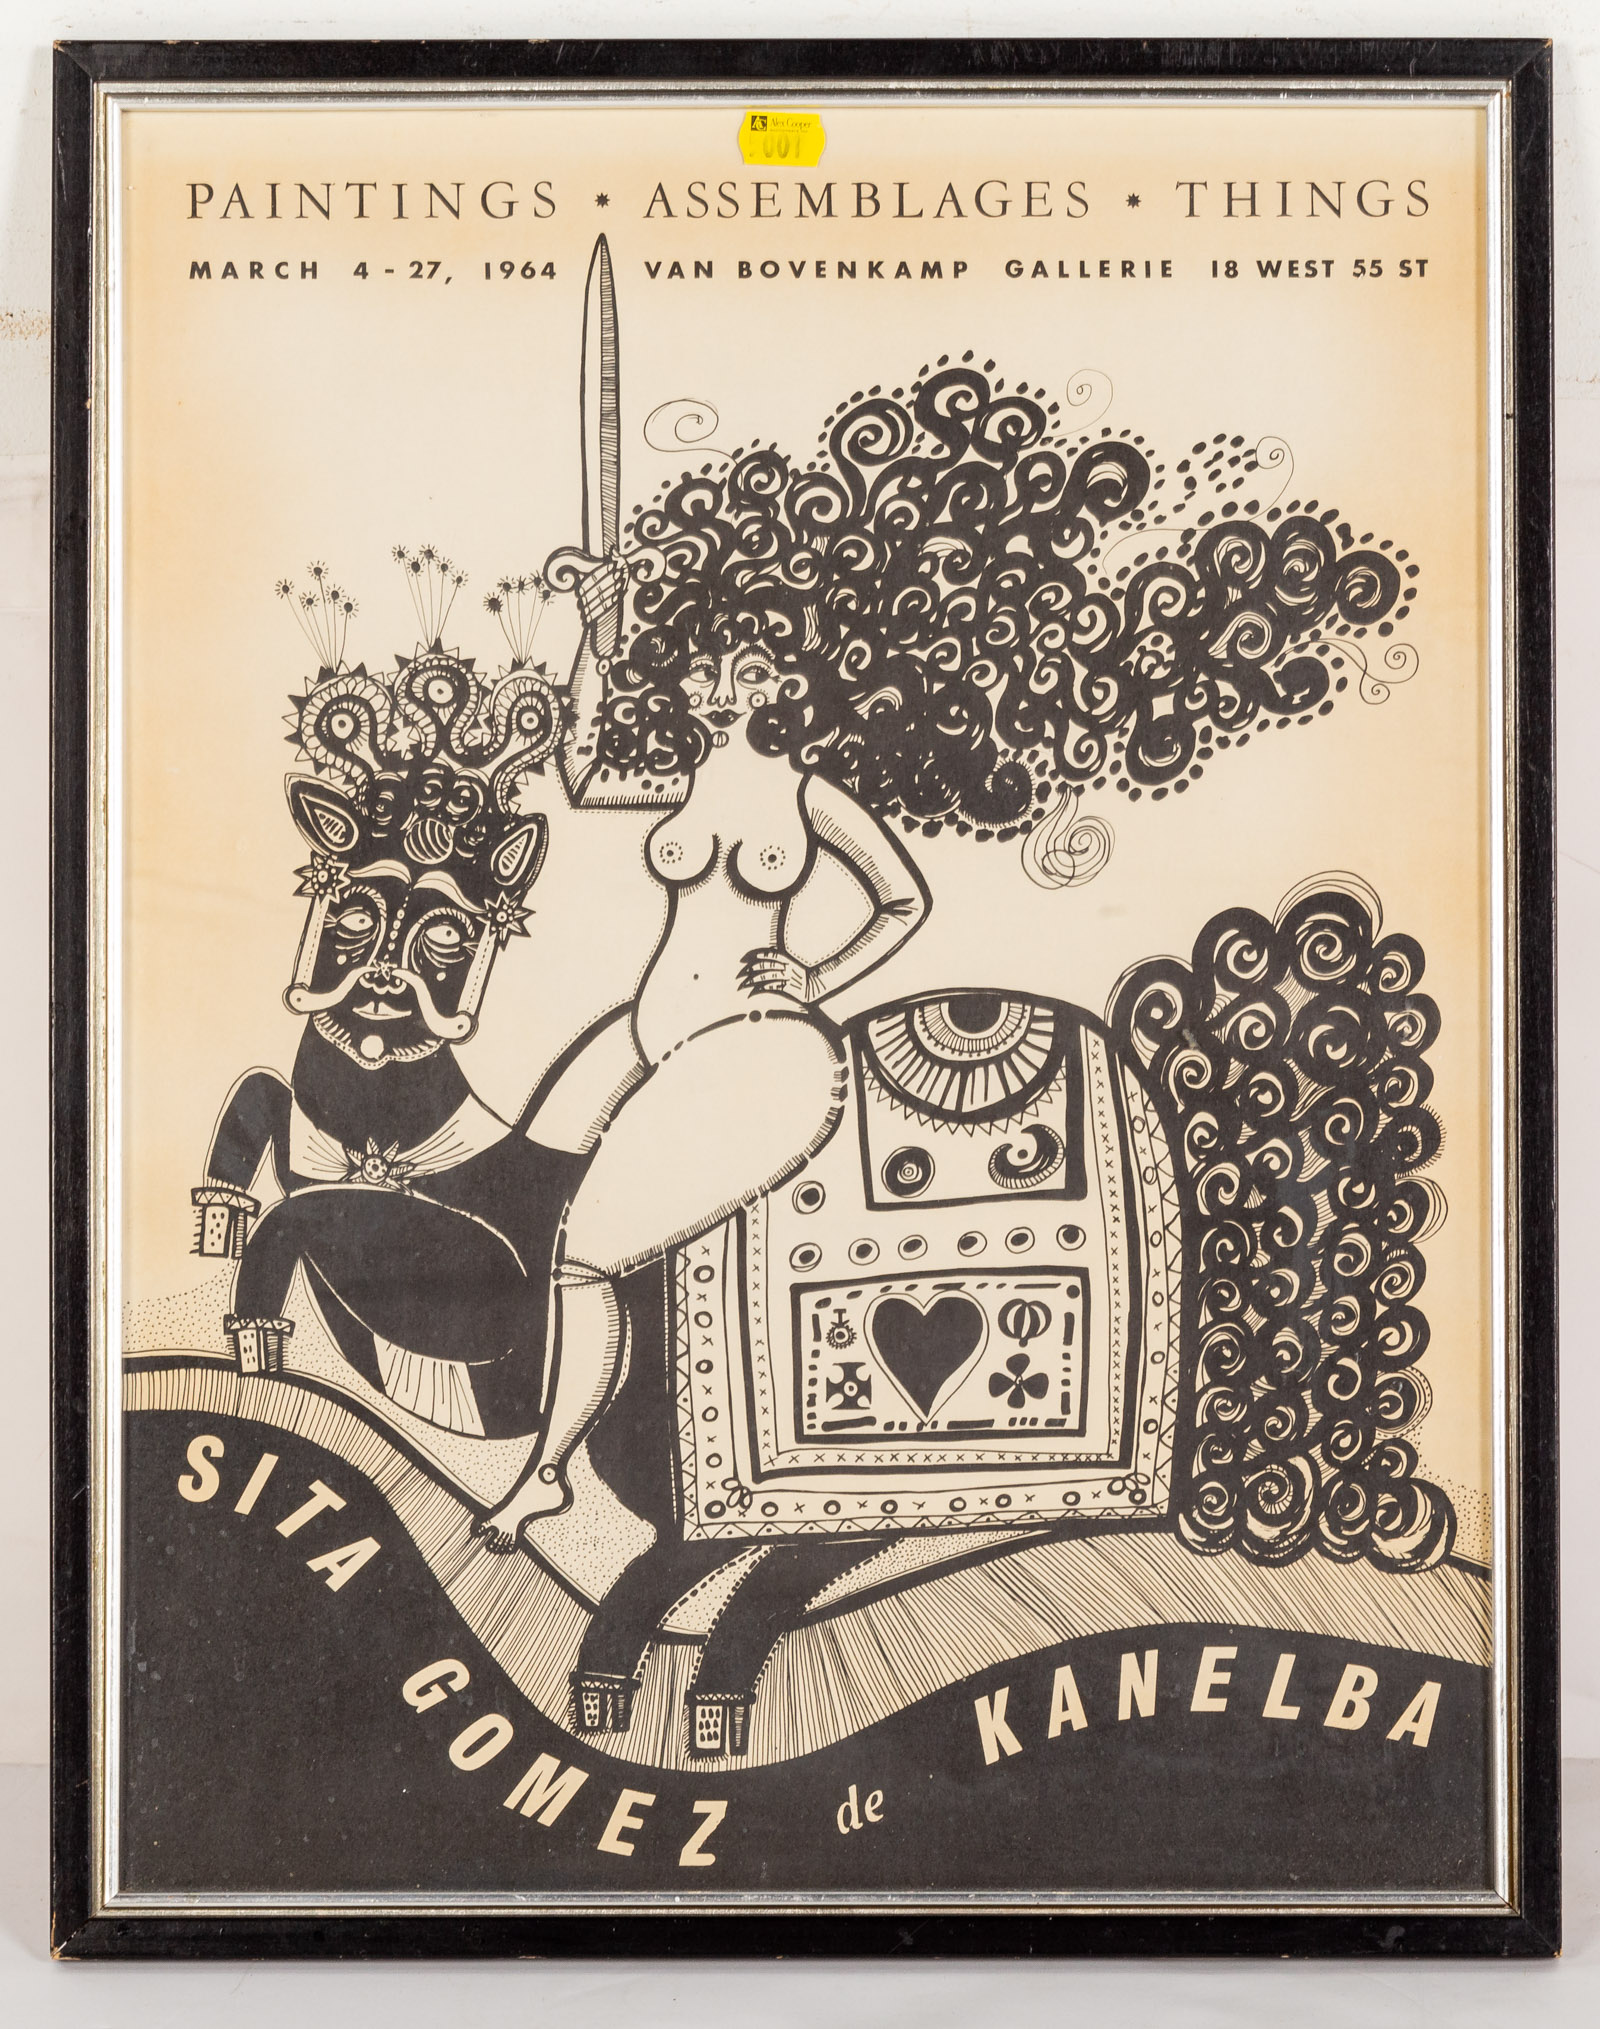 SITA GOMEZ DE KANELBA 1964 EXHIBITION 289a6d